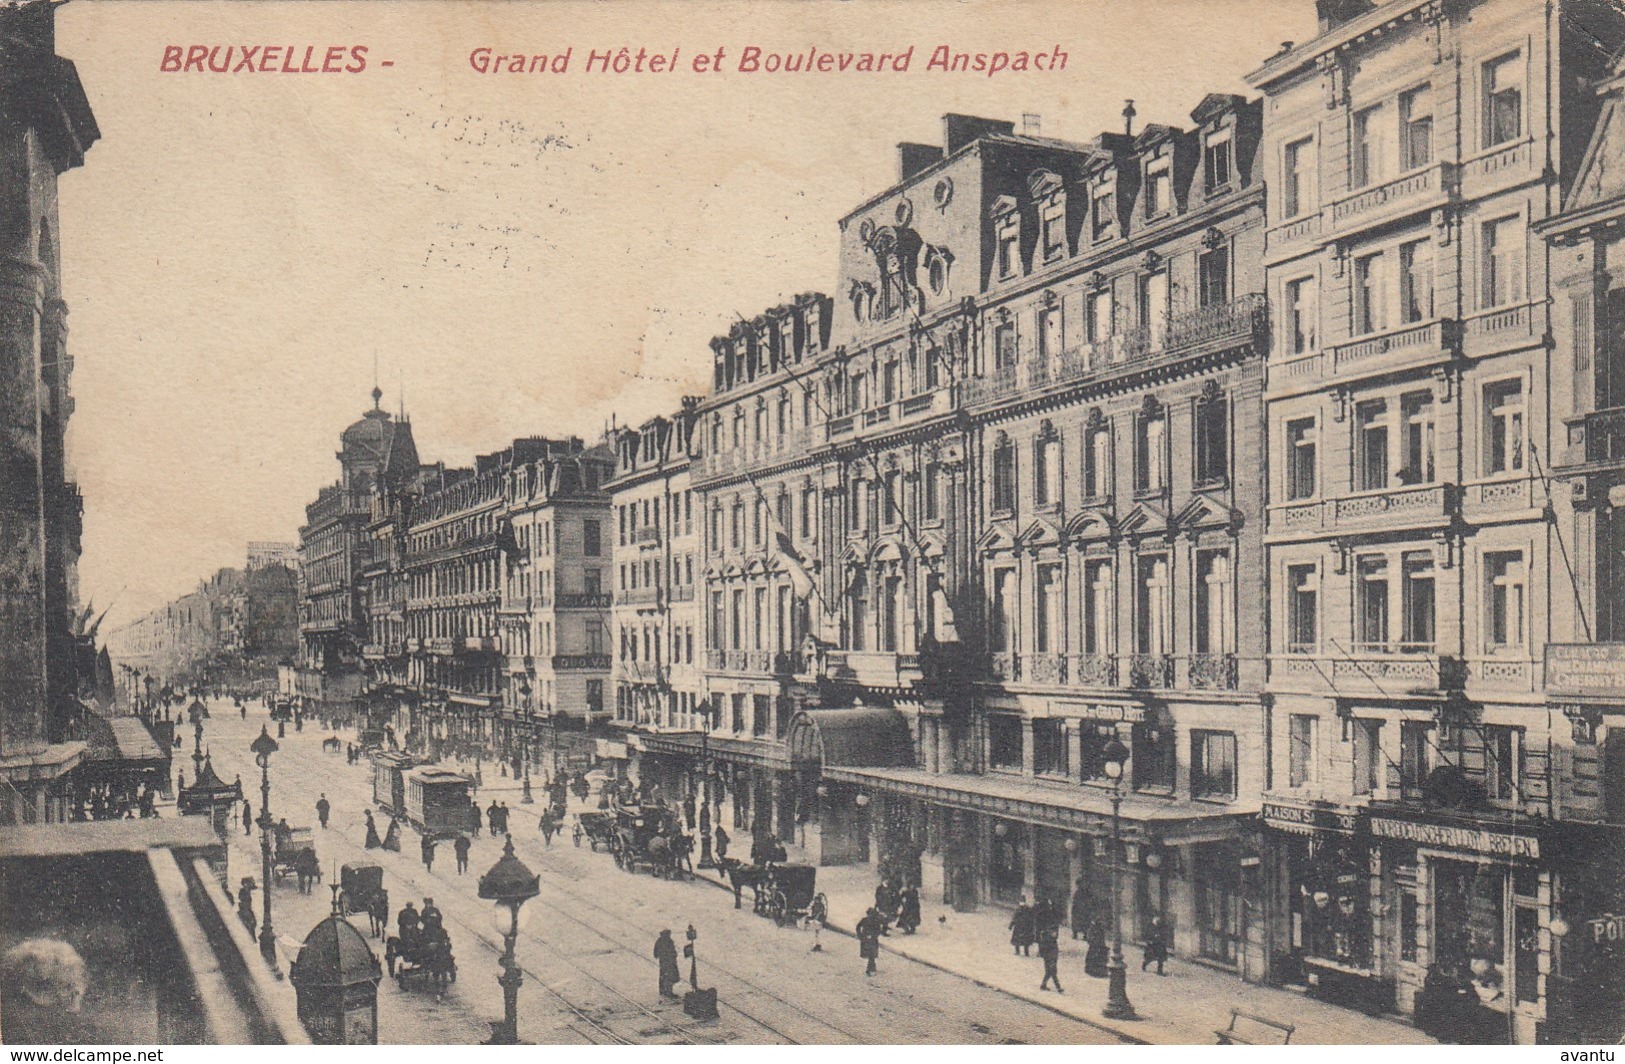 BRUXELLES / BRUSSEL / BOULEVARD ANSPACH / GRAND HOTEL / TRAM / TRAMWAYS  1910 - Marktpleinen, Pleinen